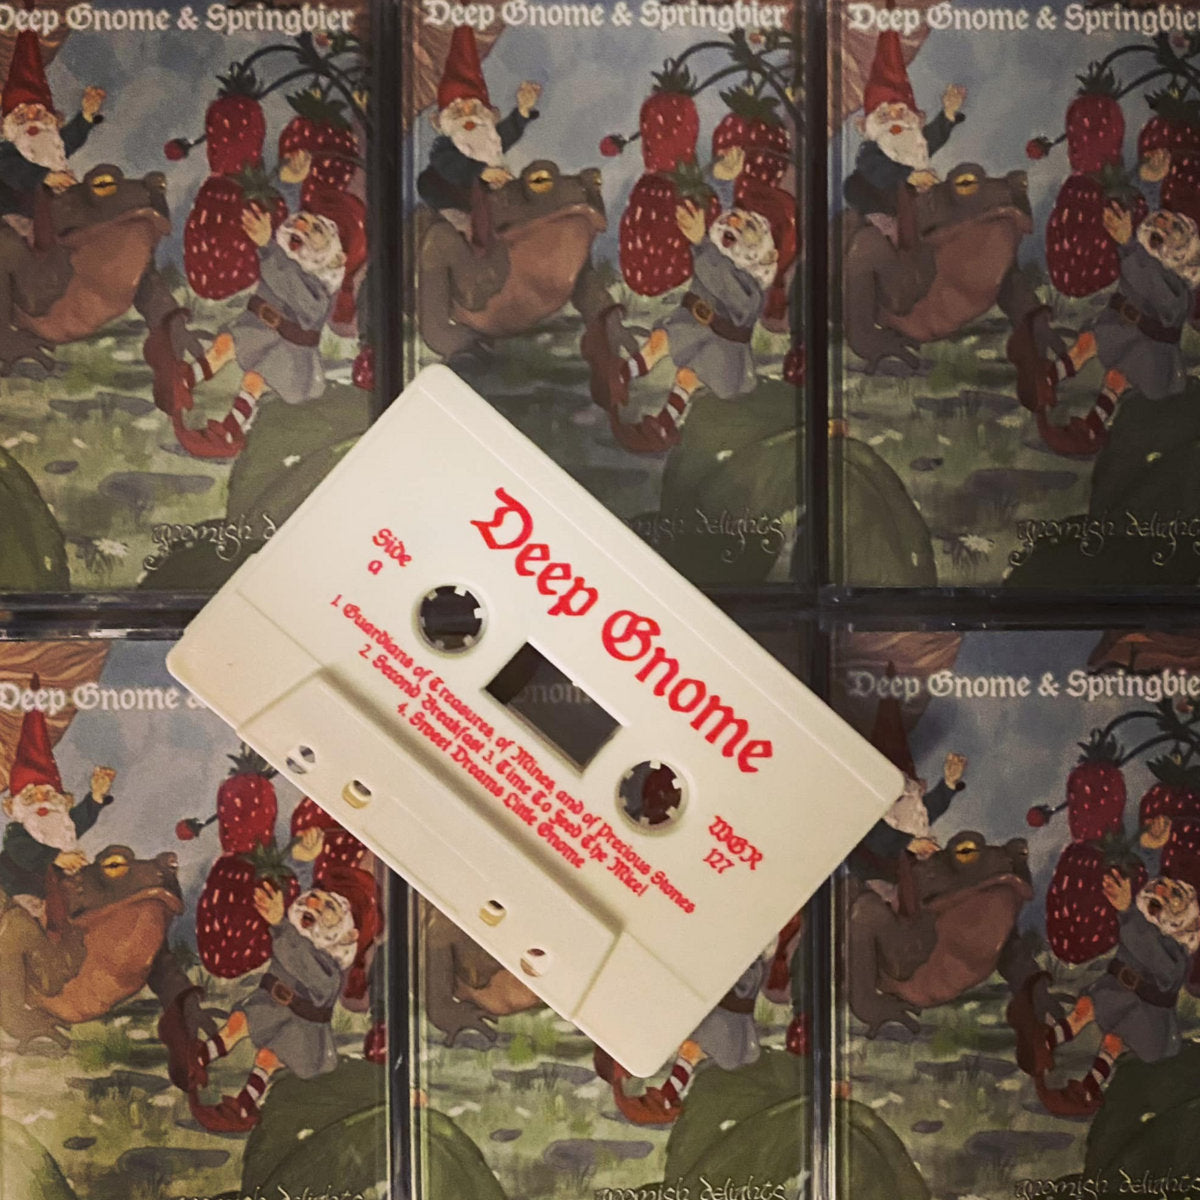 [SOLD OUT] DEEP GNOME / SPRINGBIER "Gnomish Delights" cassette tape